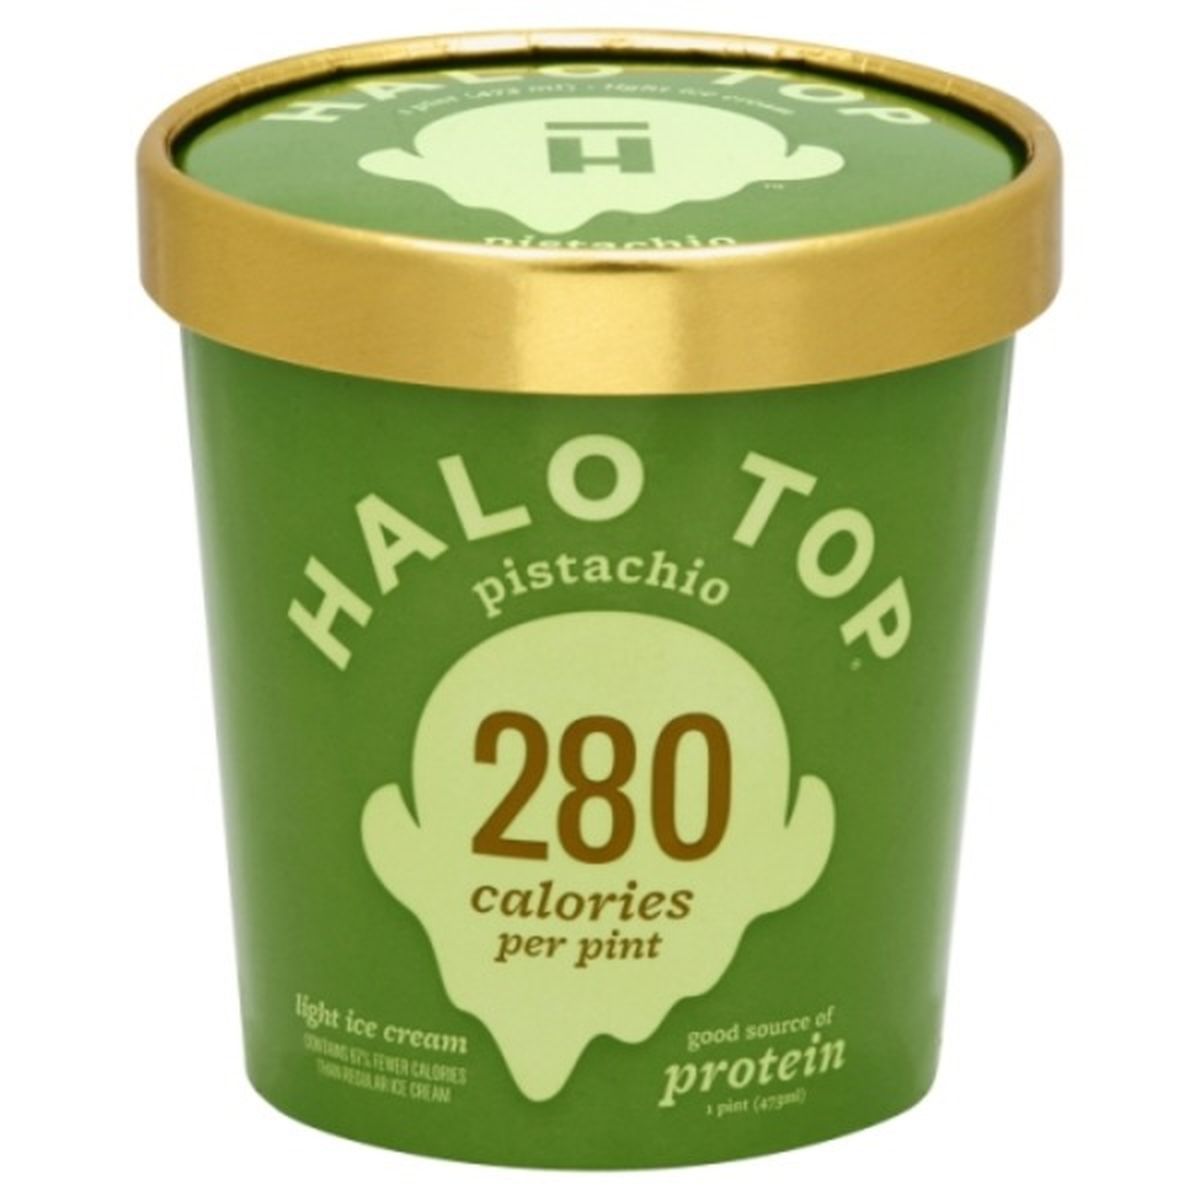 Calories in Halo Top Ice Cream, Light, Pistachio